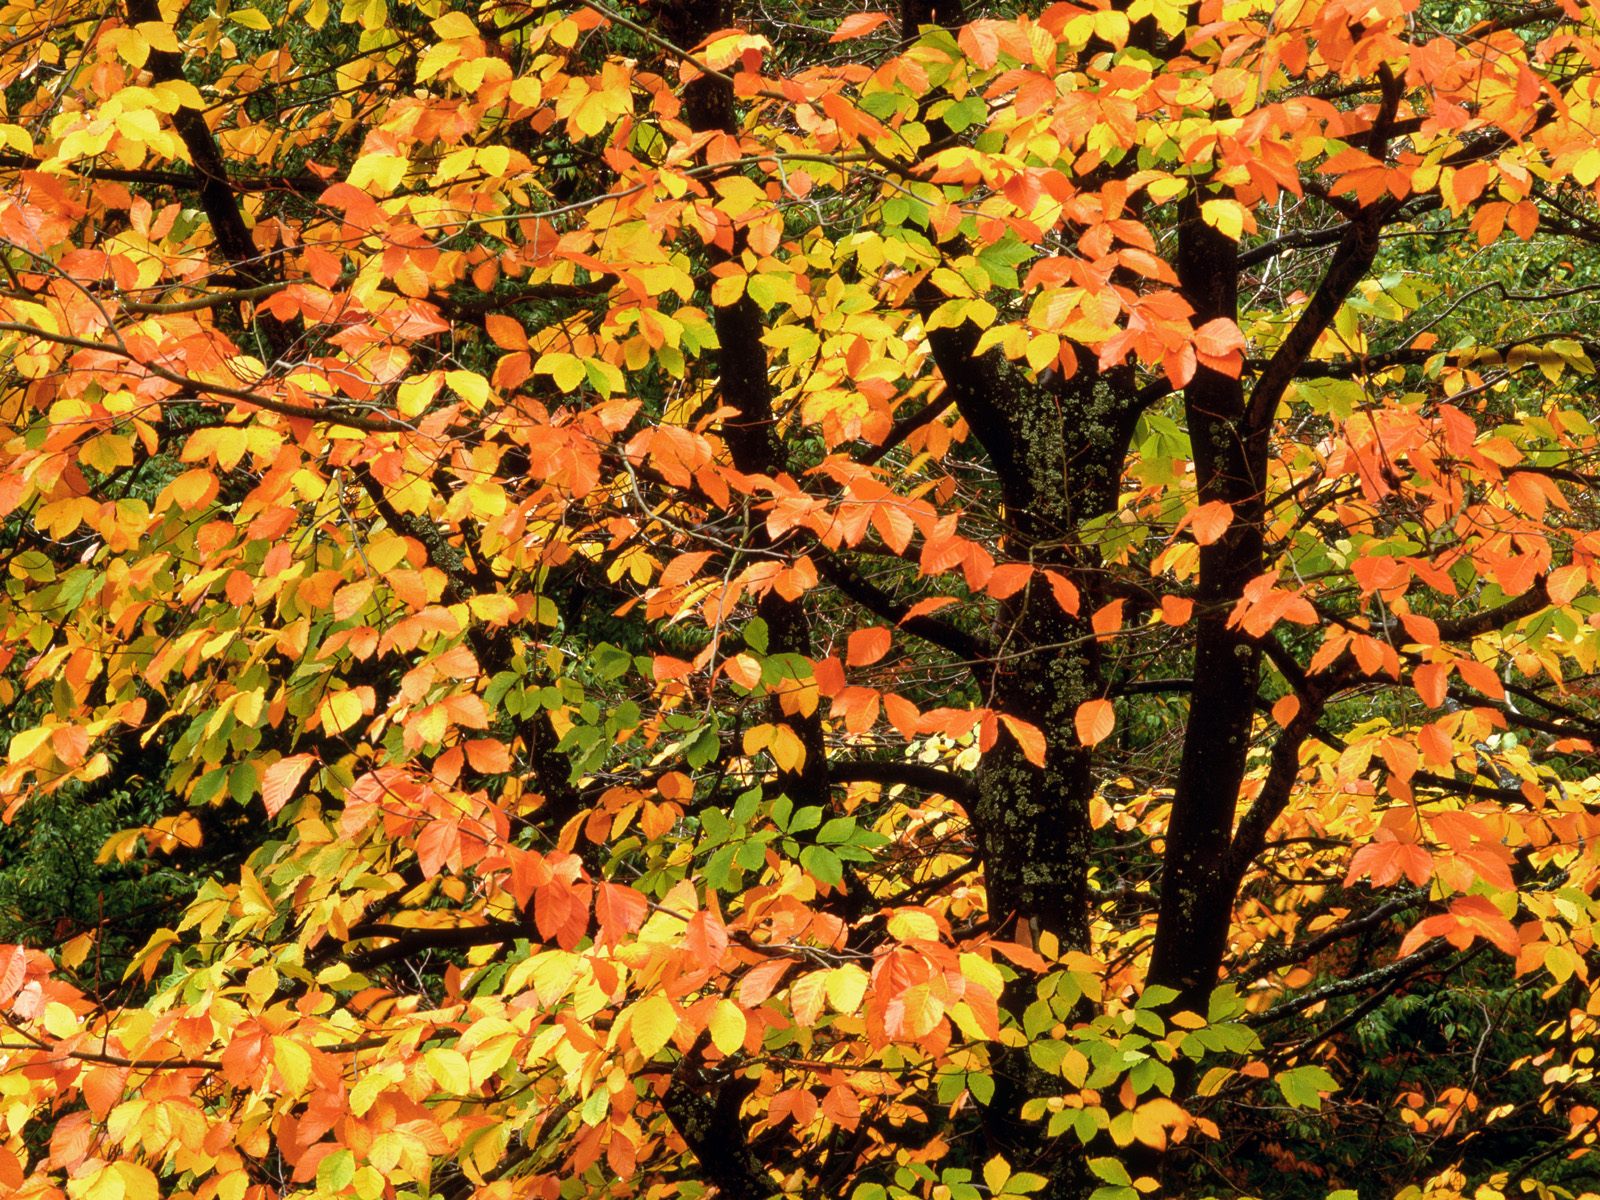 Beech Tree in Autumn, Washington Park, Portland